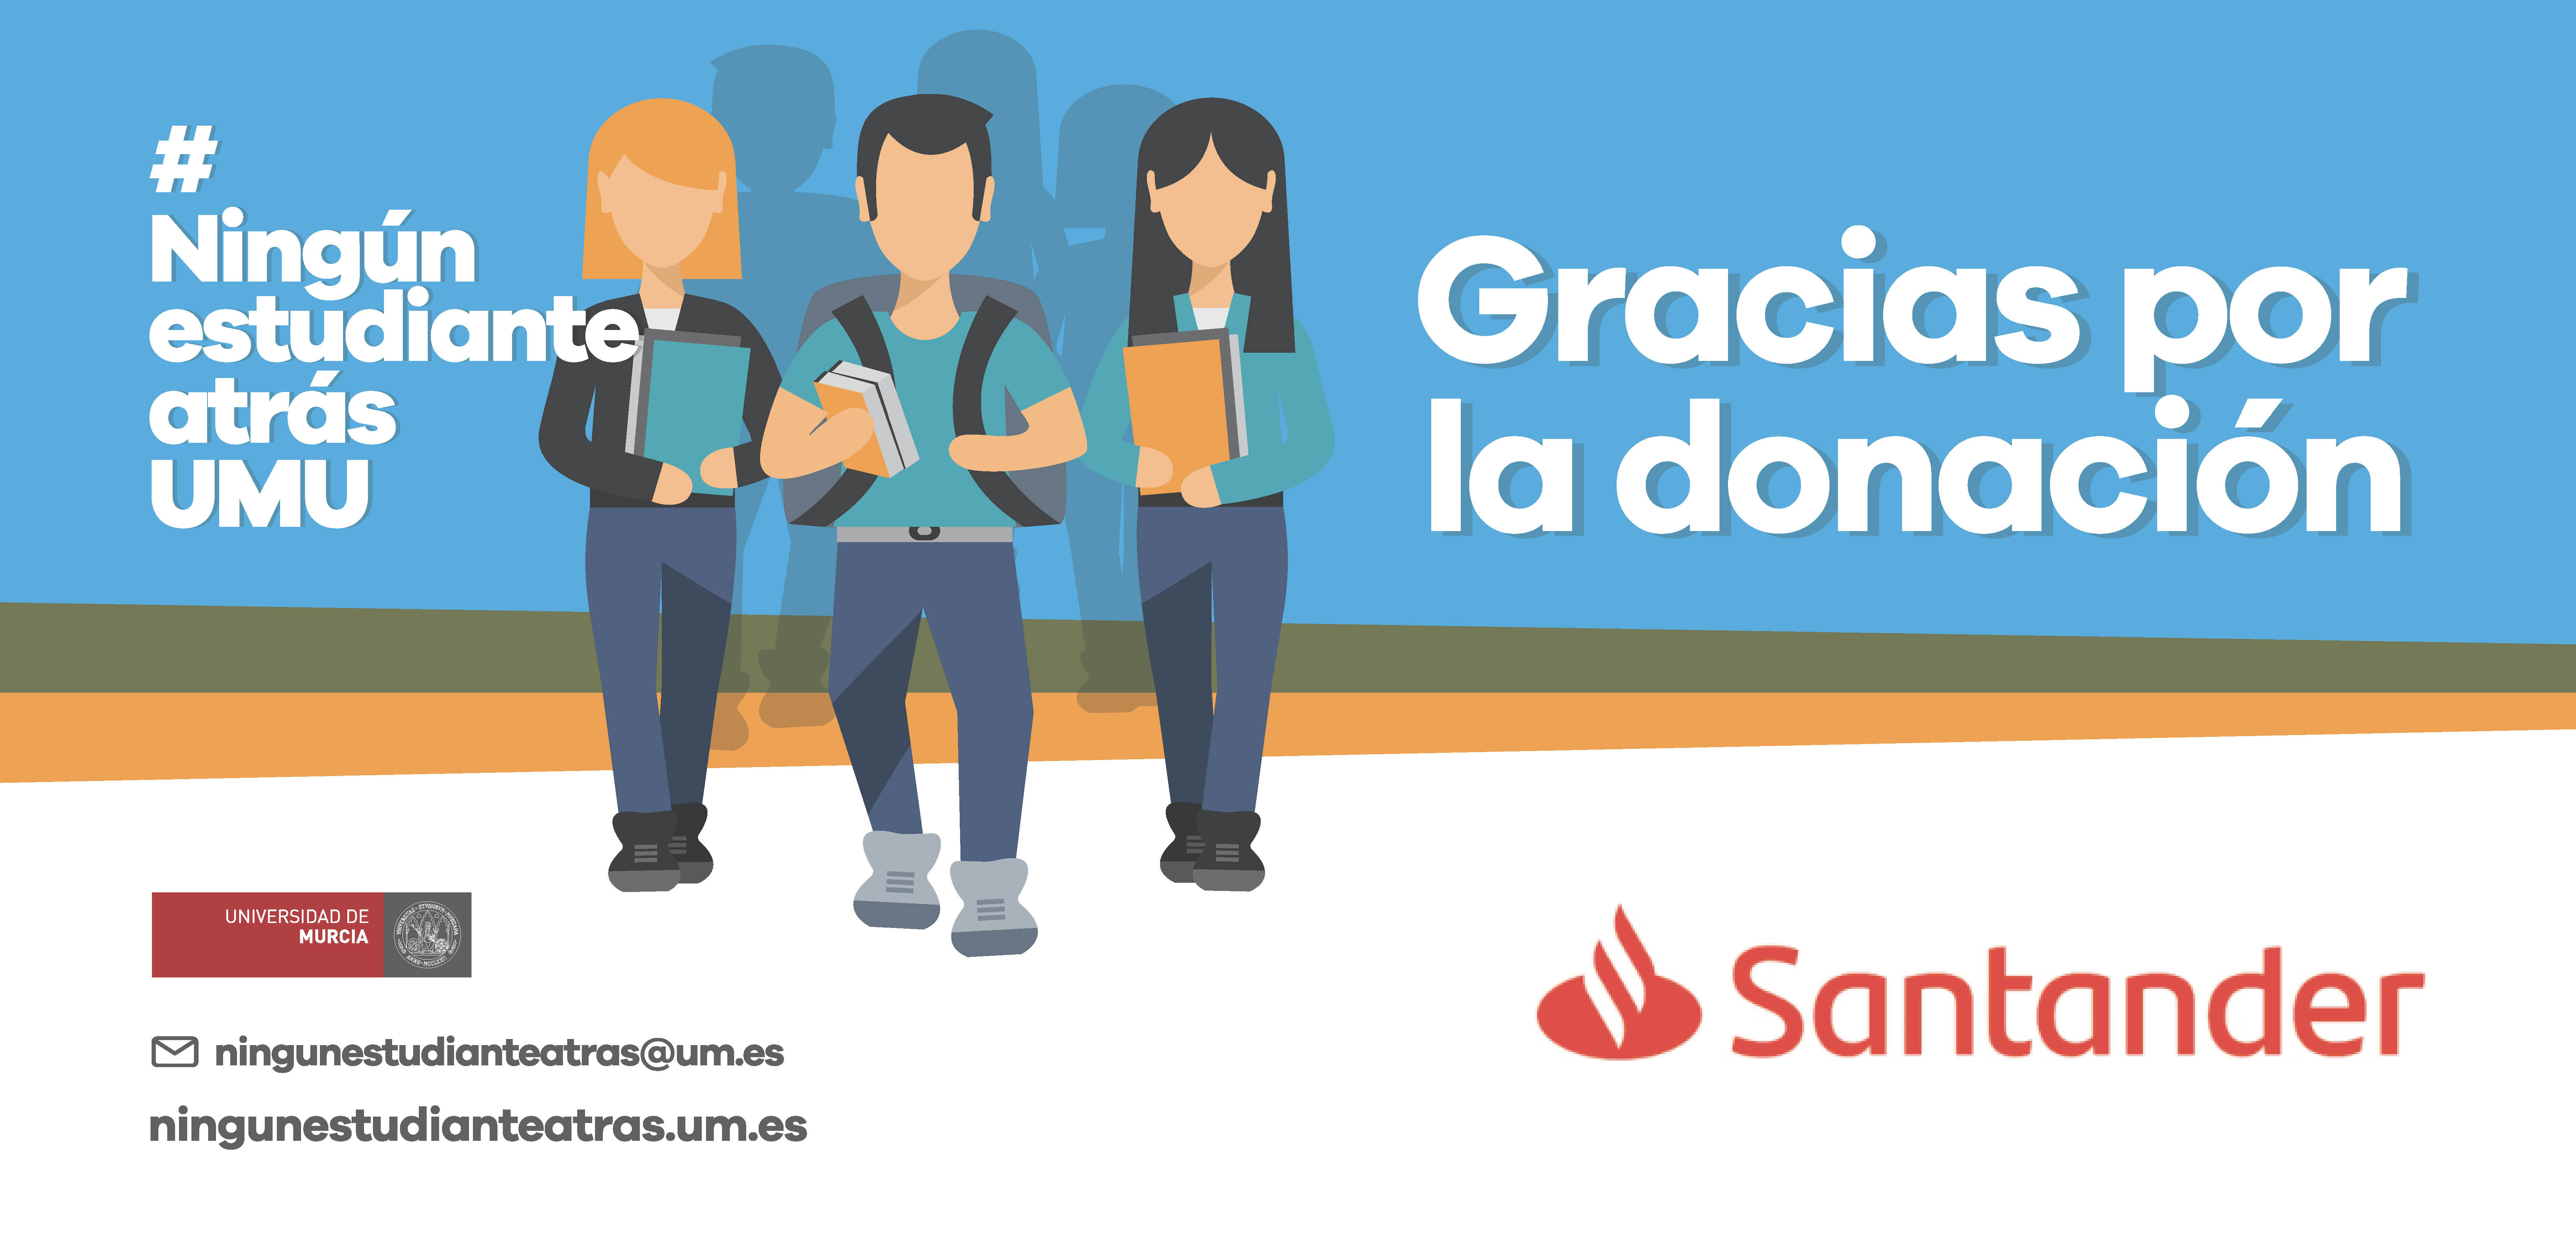 Banco Santander apoya el proyecto de RSC #NingúnEstudianteAtrásUMU de la Universidad de Murcia, coordinado por el vicerrector Longinos Marín